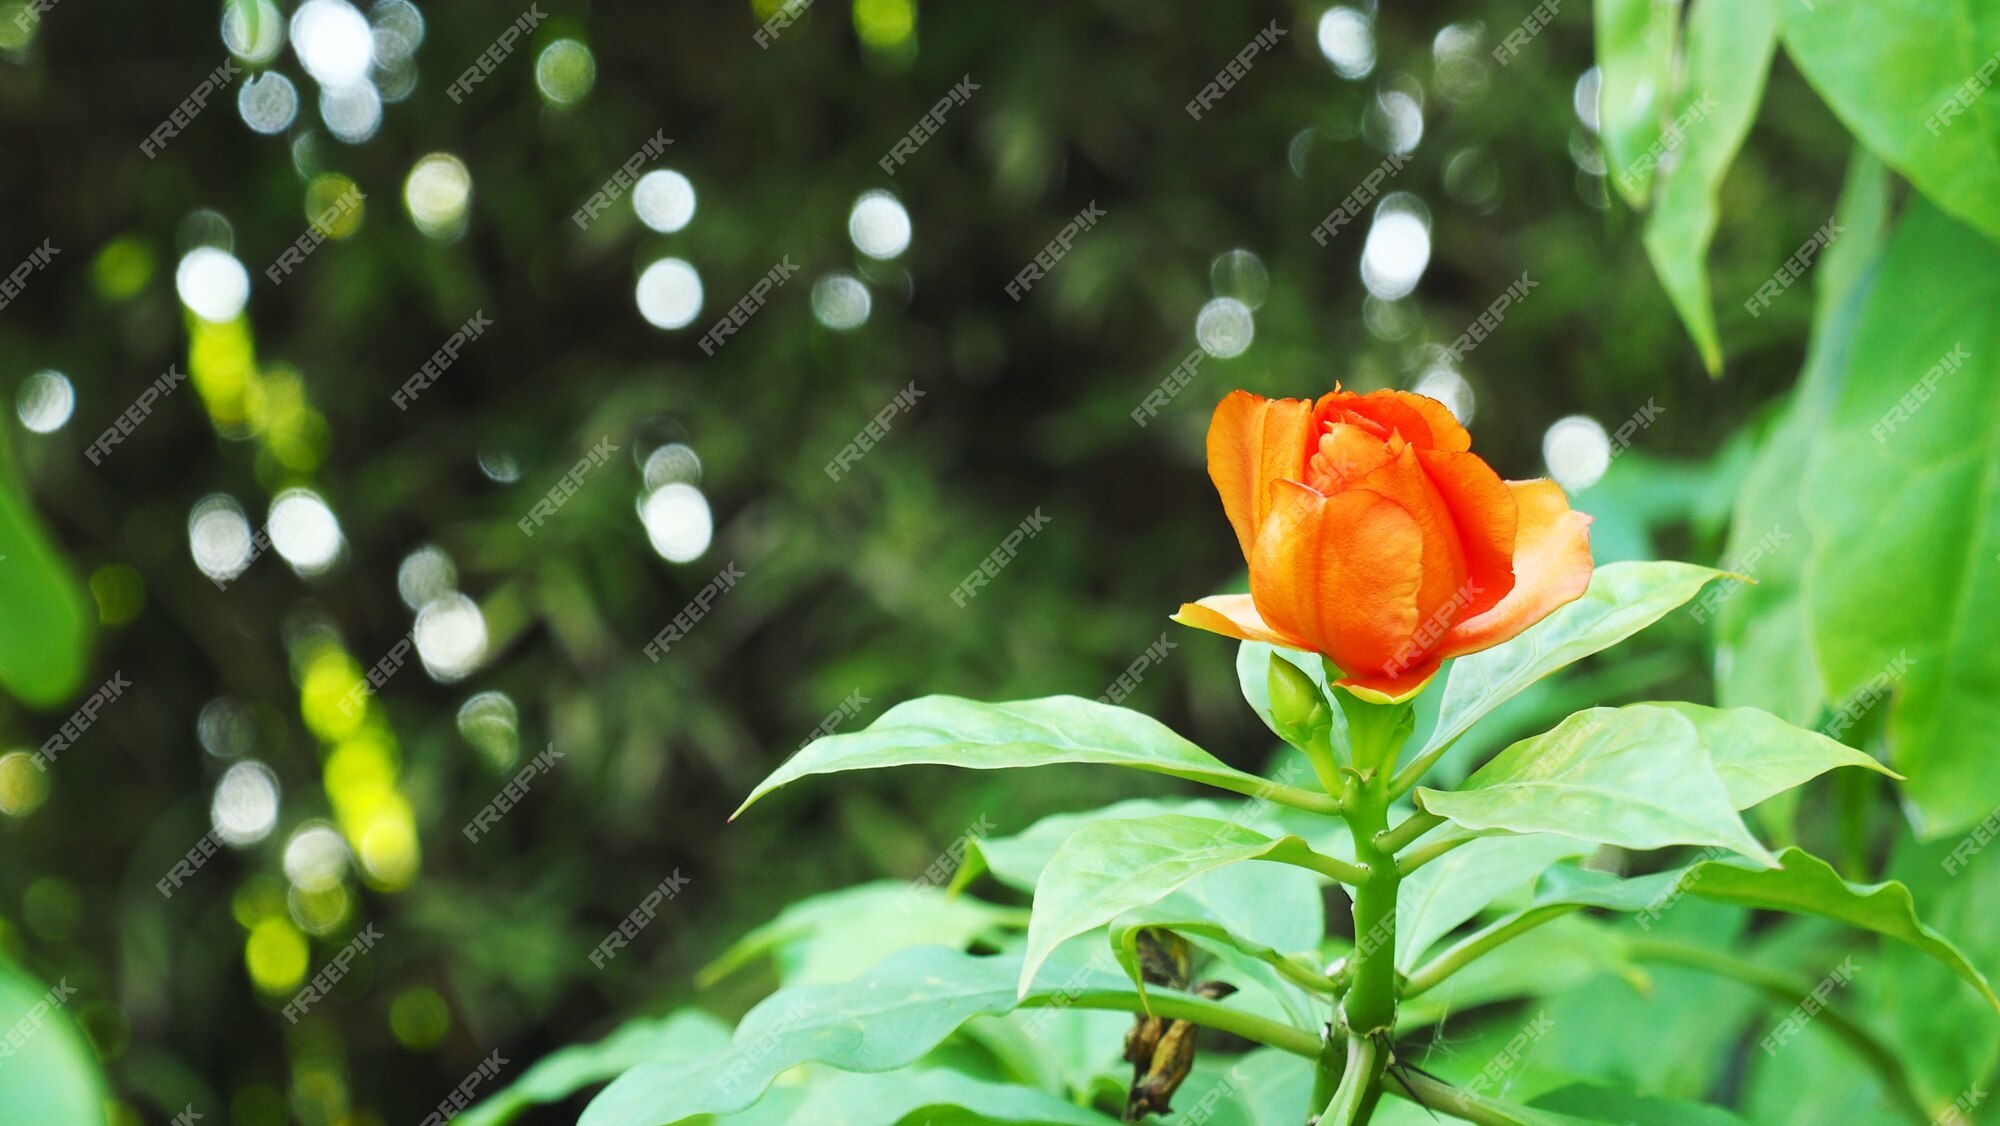 Imagem do close-up da flor de pereskia bleo ou da cera rose.it é um tipo da  flor do cacto. | Foto Premium